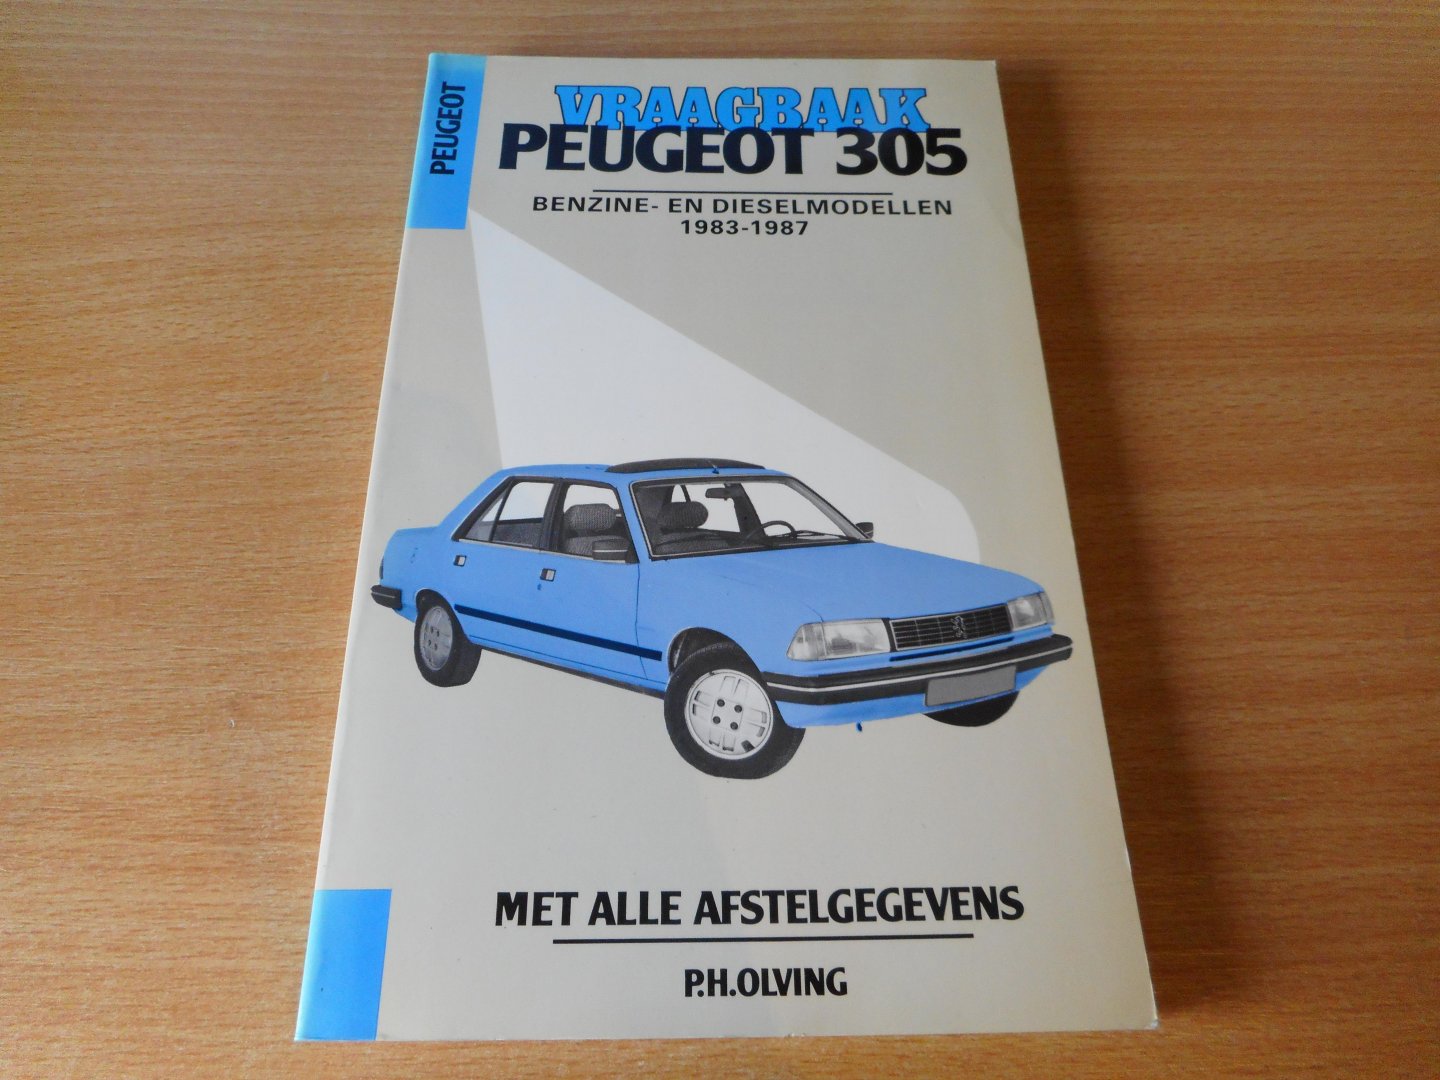 Olving, P.H. (red.) - Vraagbaak Peugeot 305. Benzine- en dieselmodellen 1983-1987.